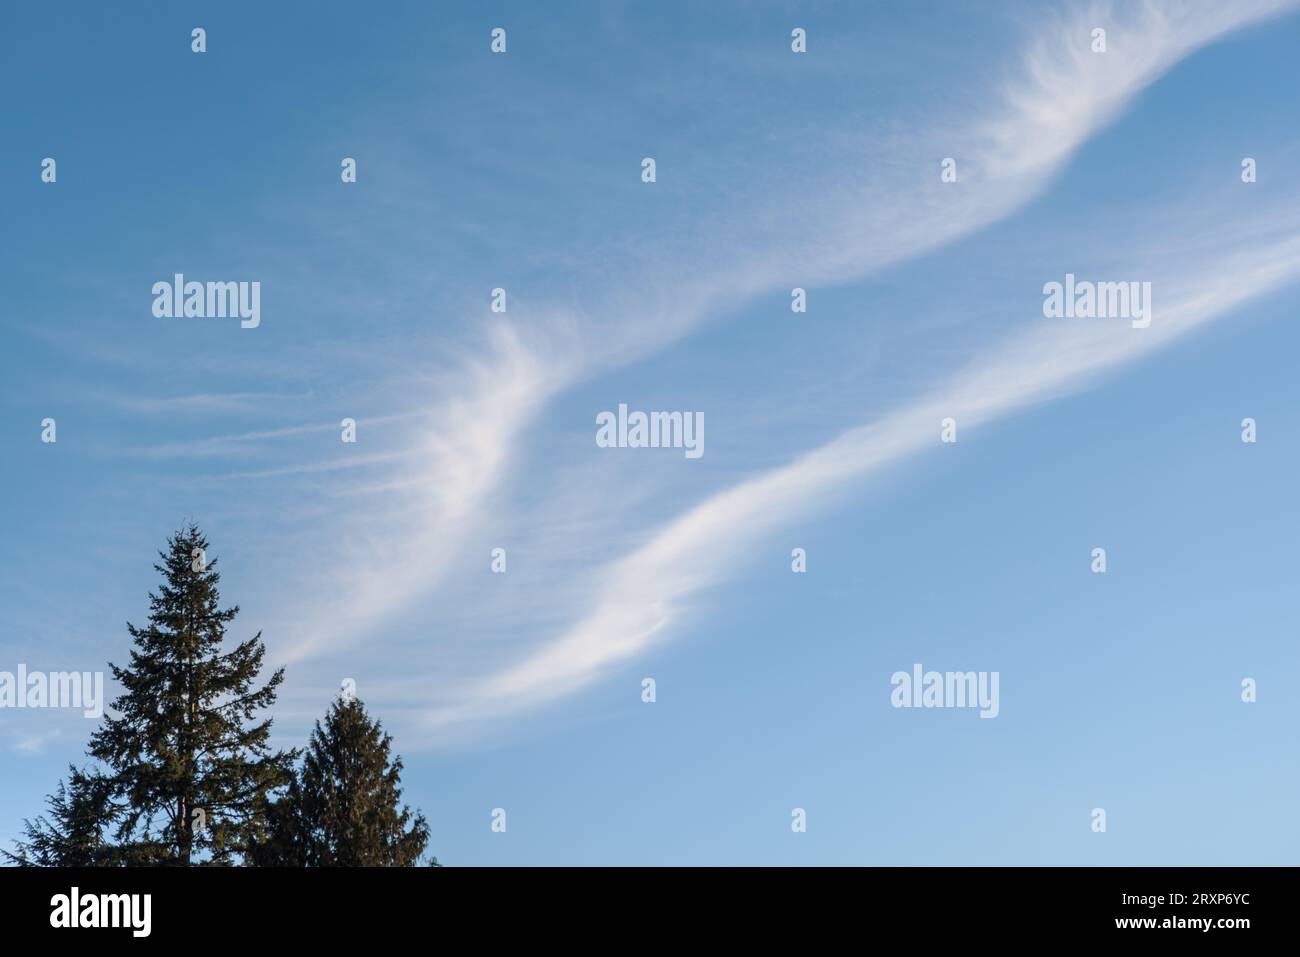 Friedliche Winterszene mit wabernden, dünnen weißen Wolken, die einen blauen Himmel überqueren; die Spitze der immergrünen Bäume zeigt in Vancouver, Kanada, zum Himmel. Stockfoto